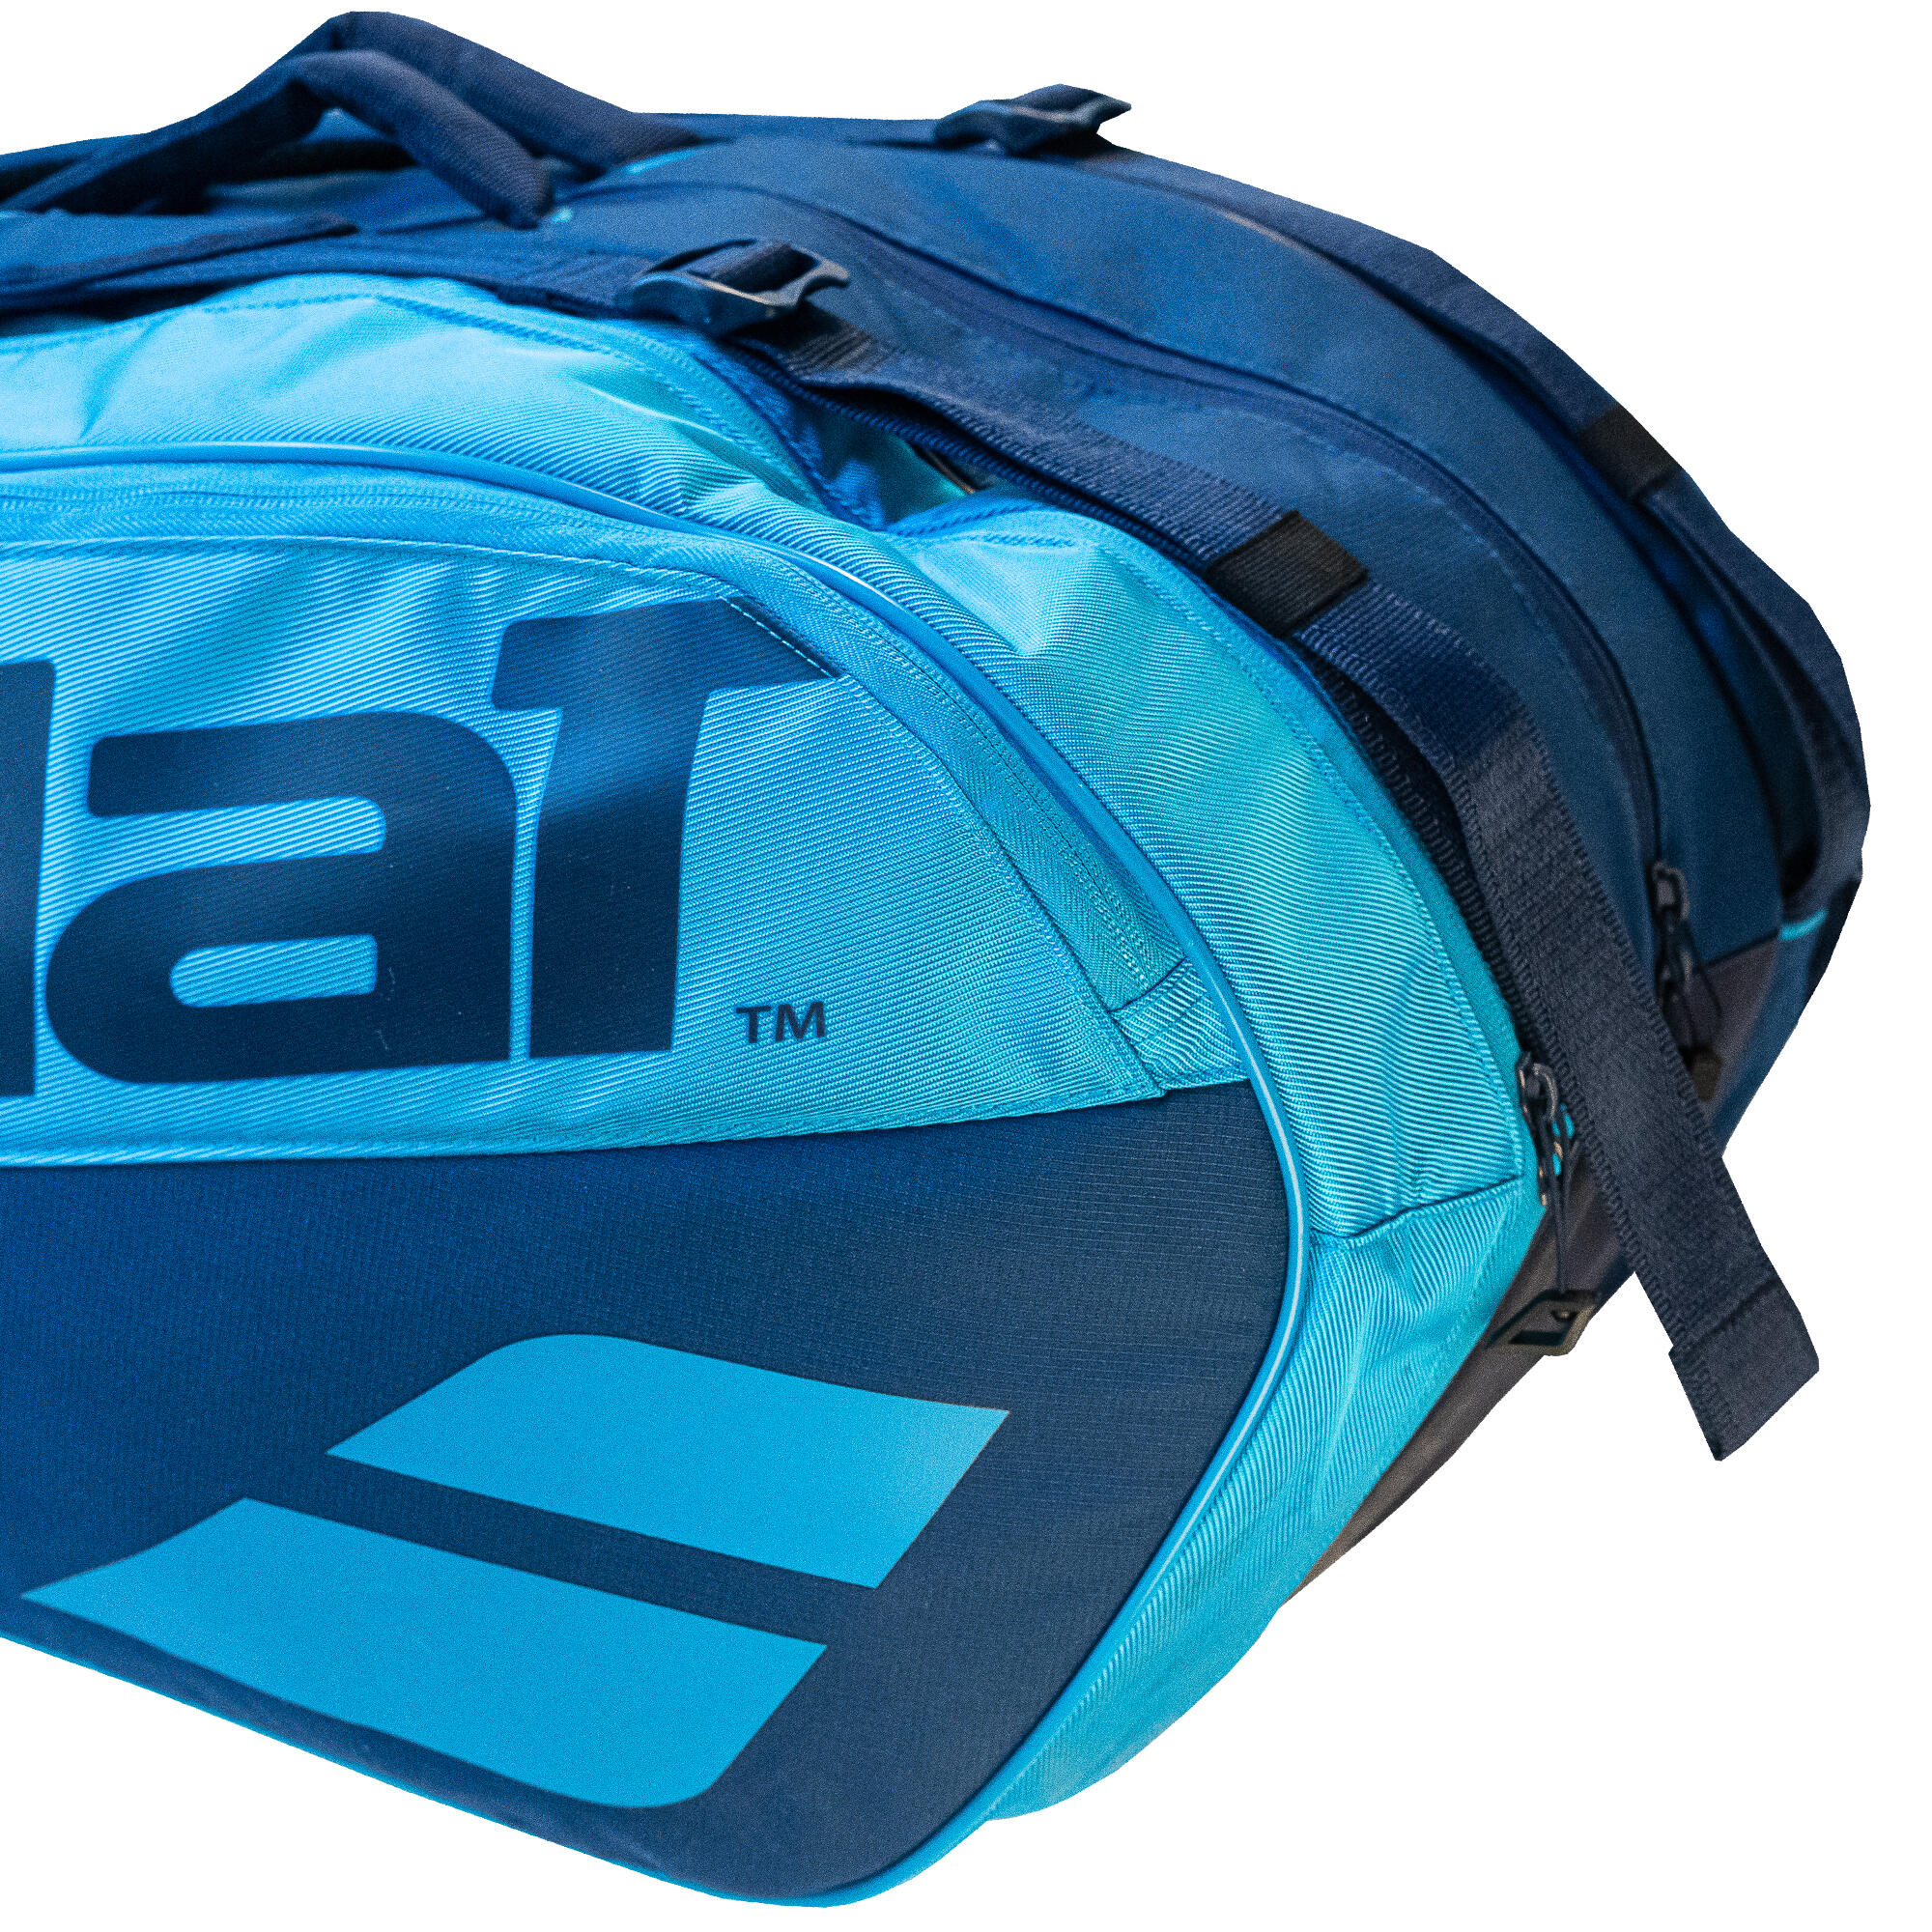 9R Tennis Bag Pure - Blue 4/7